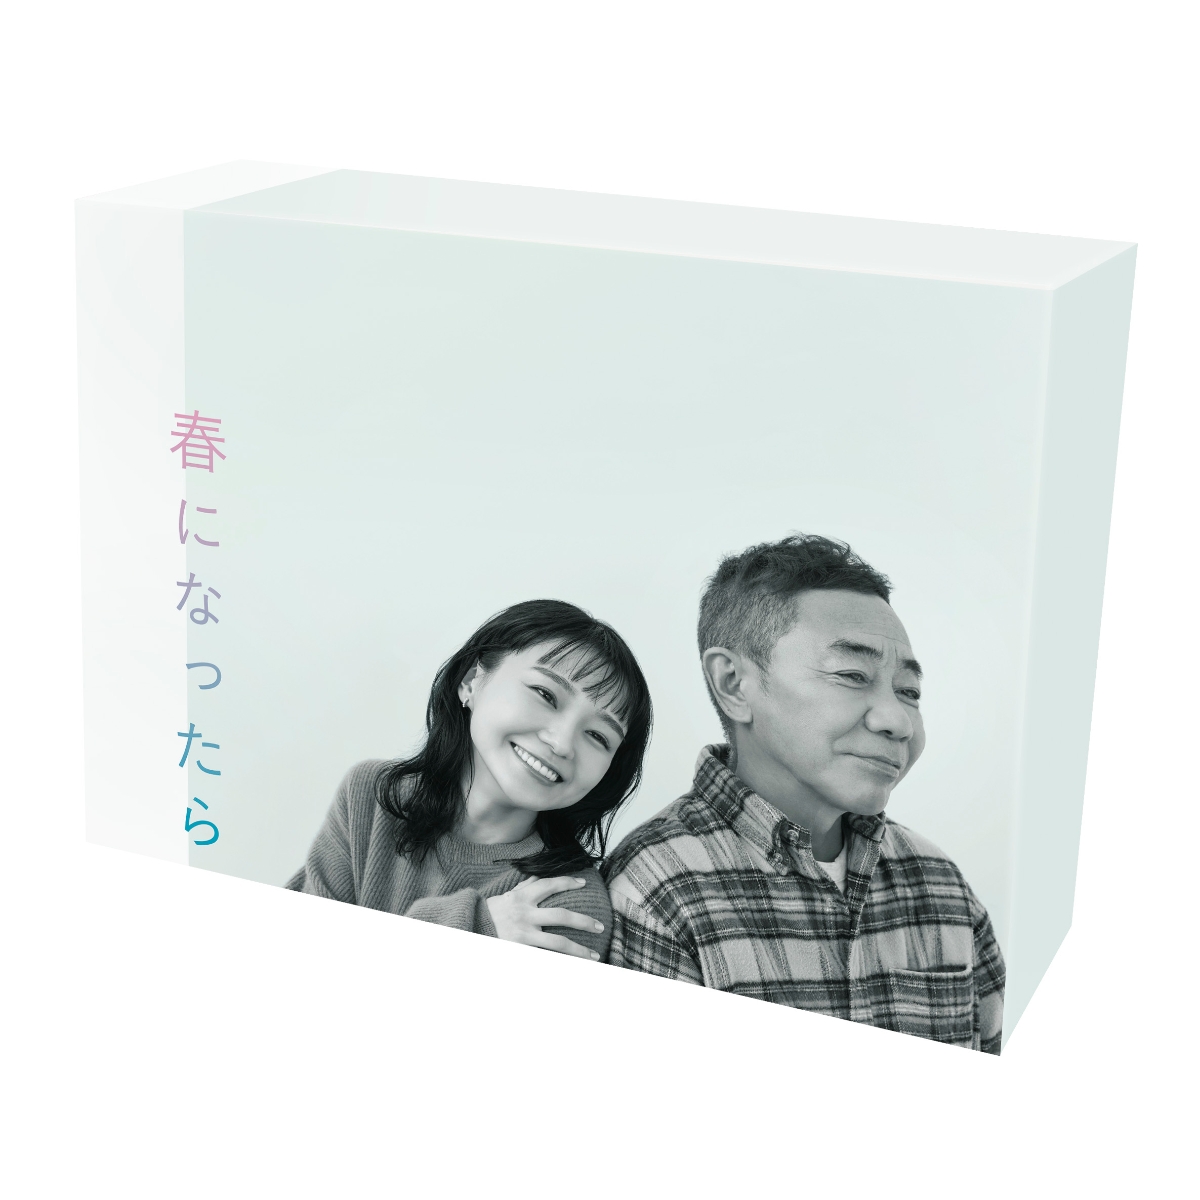 楽天ブックス: 春になったら DVD-BOX - 奈緒 - 4571519925857 : DVD